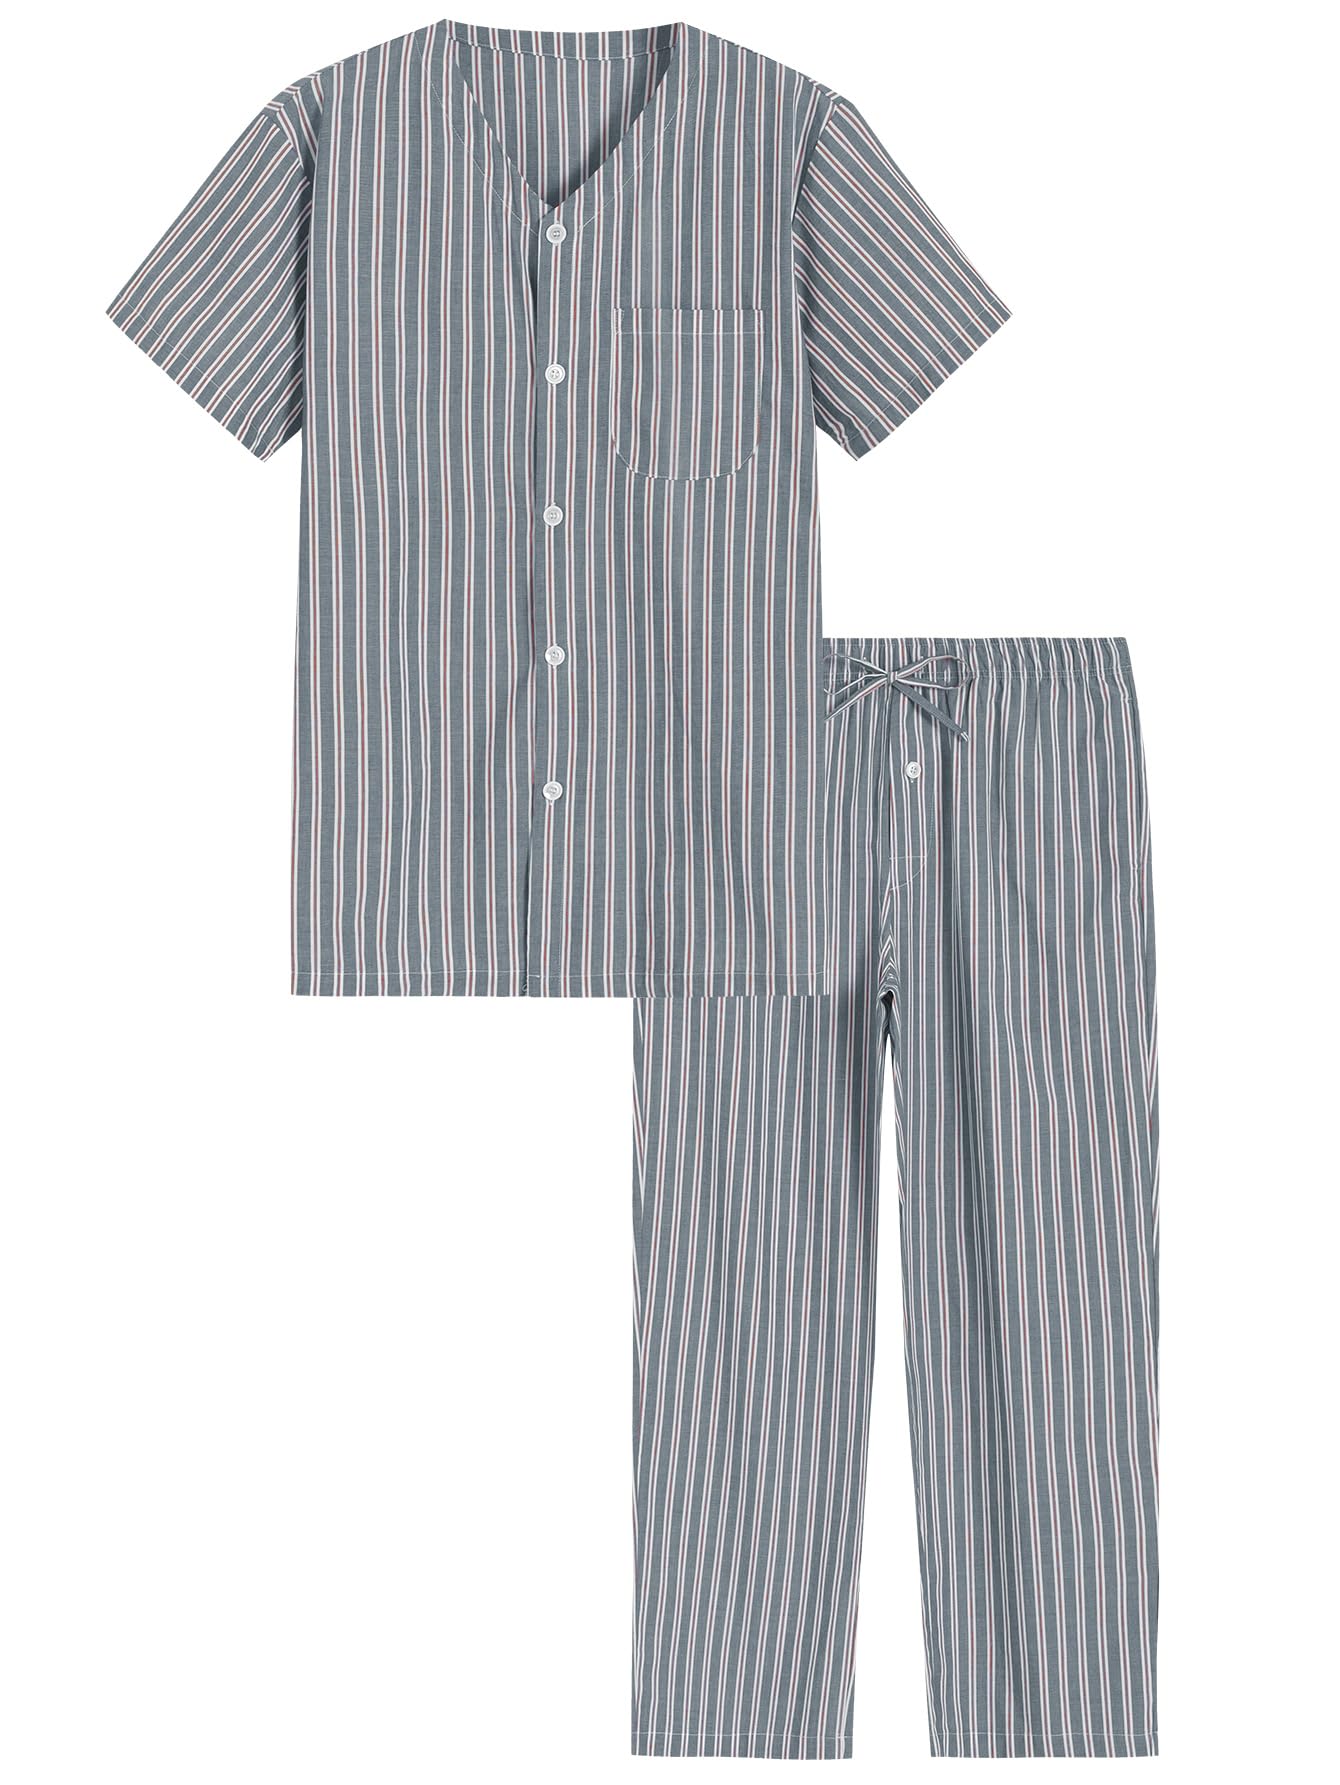 Men's Cotton Pajamas Set Button Up Shirt and Pants for Summer - Latuza